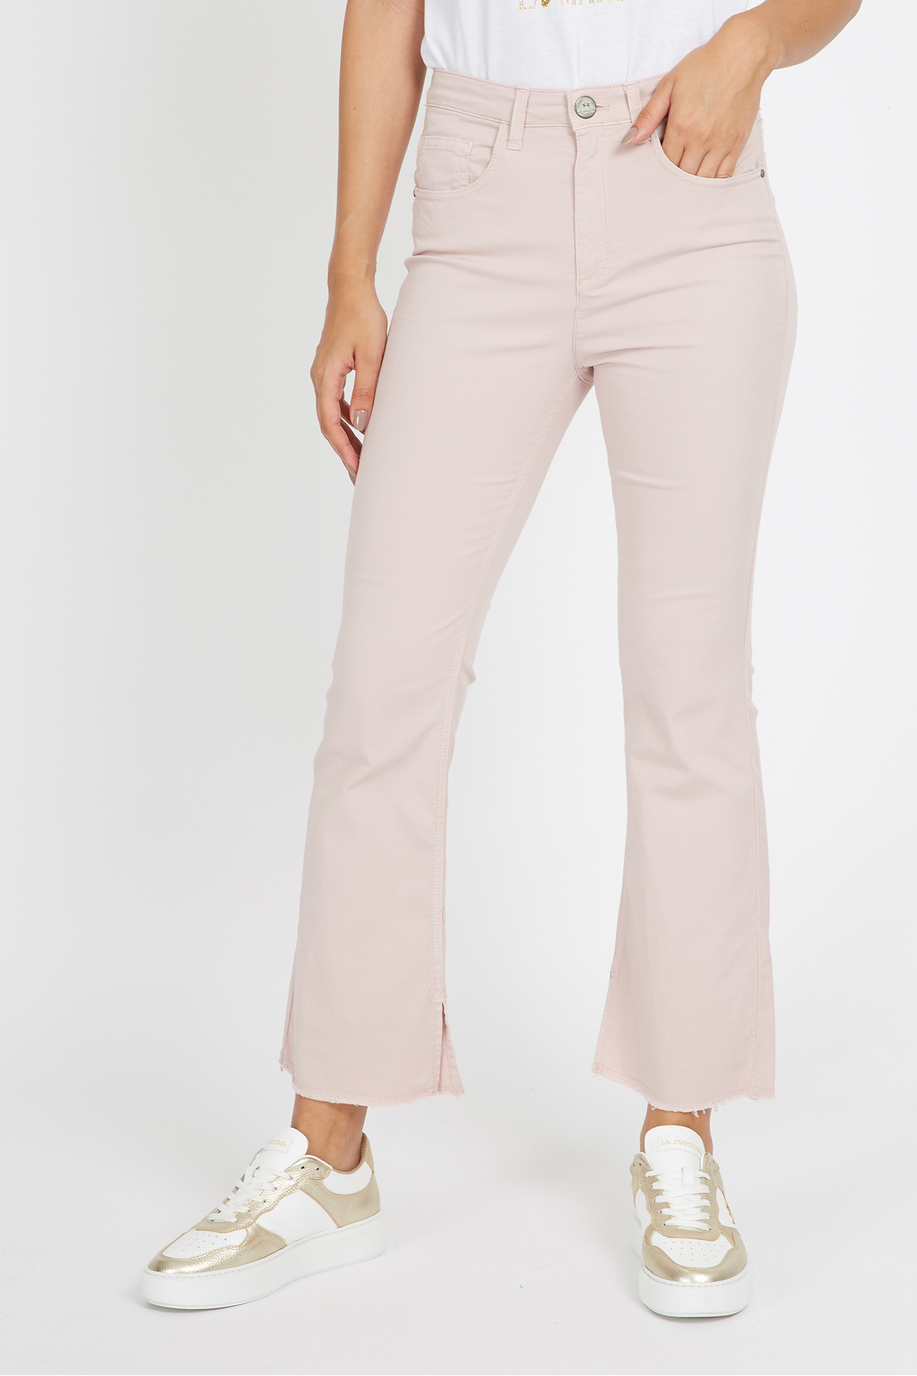 Pantalone da donna in cotone elasticizzato 5 tasche regular fit - Vane - Argentina | La Martina - Official Online Shop